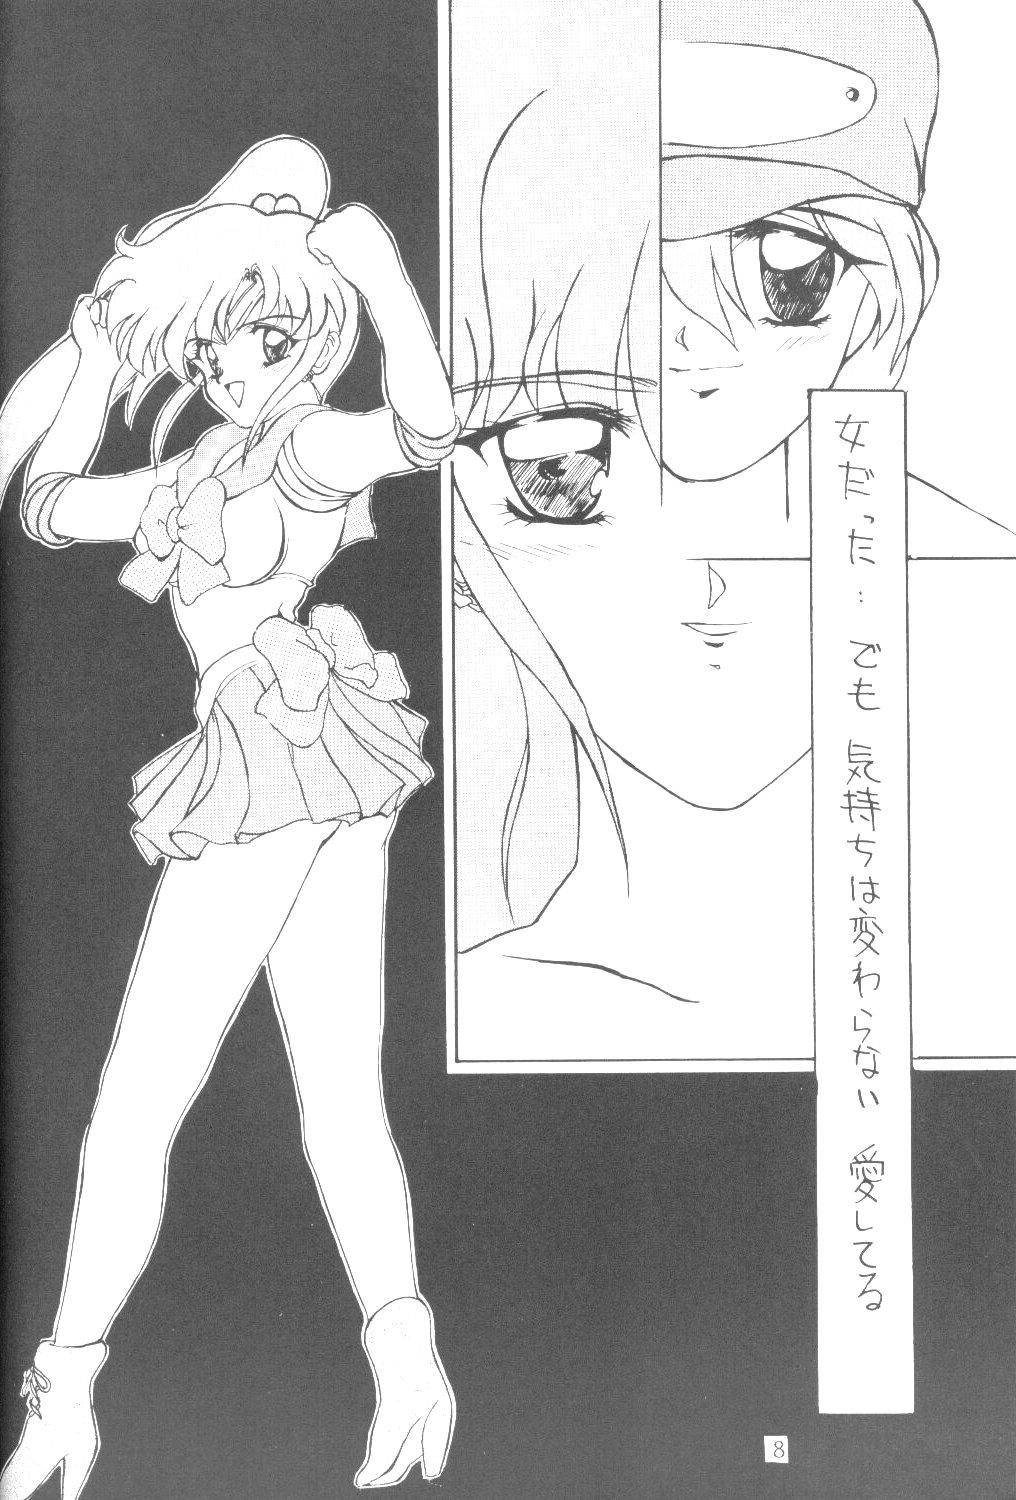 Big Penis ALIVE AMI LOST - Sailor moon Emo Gay - Page 7